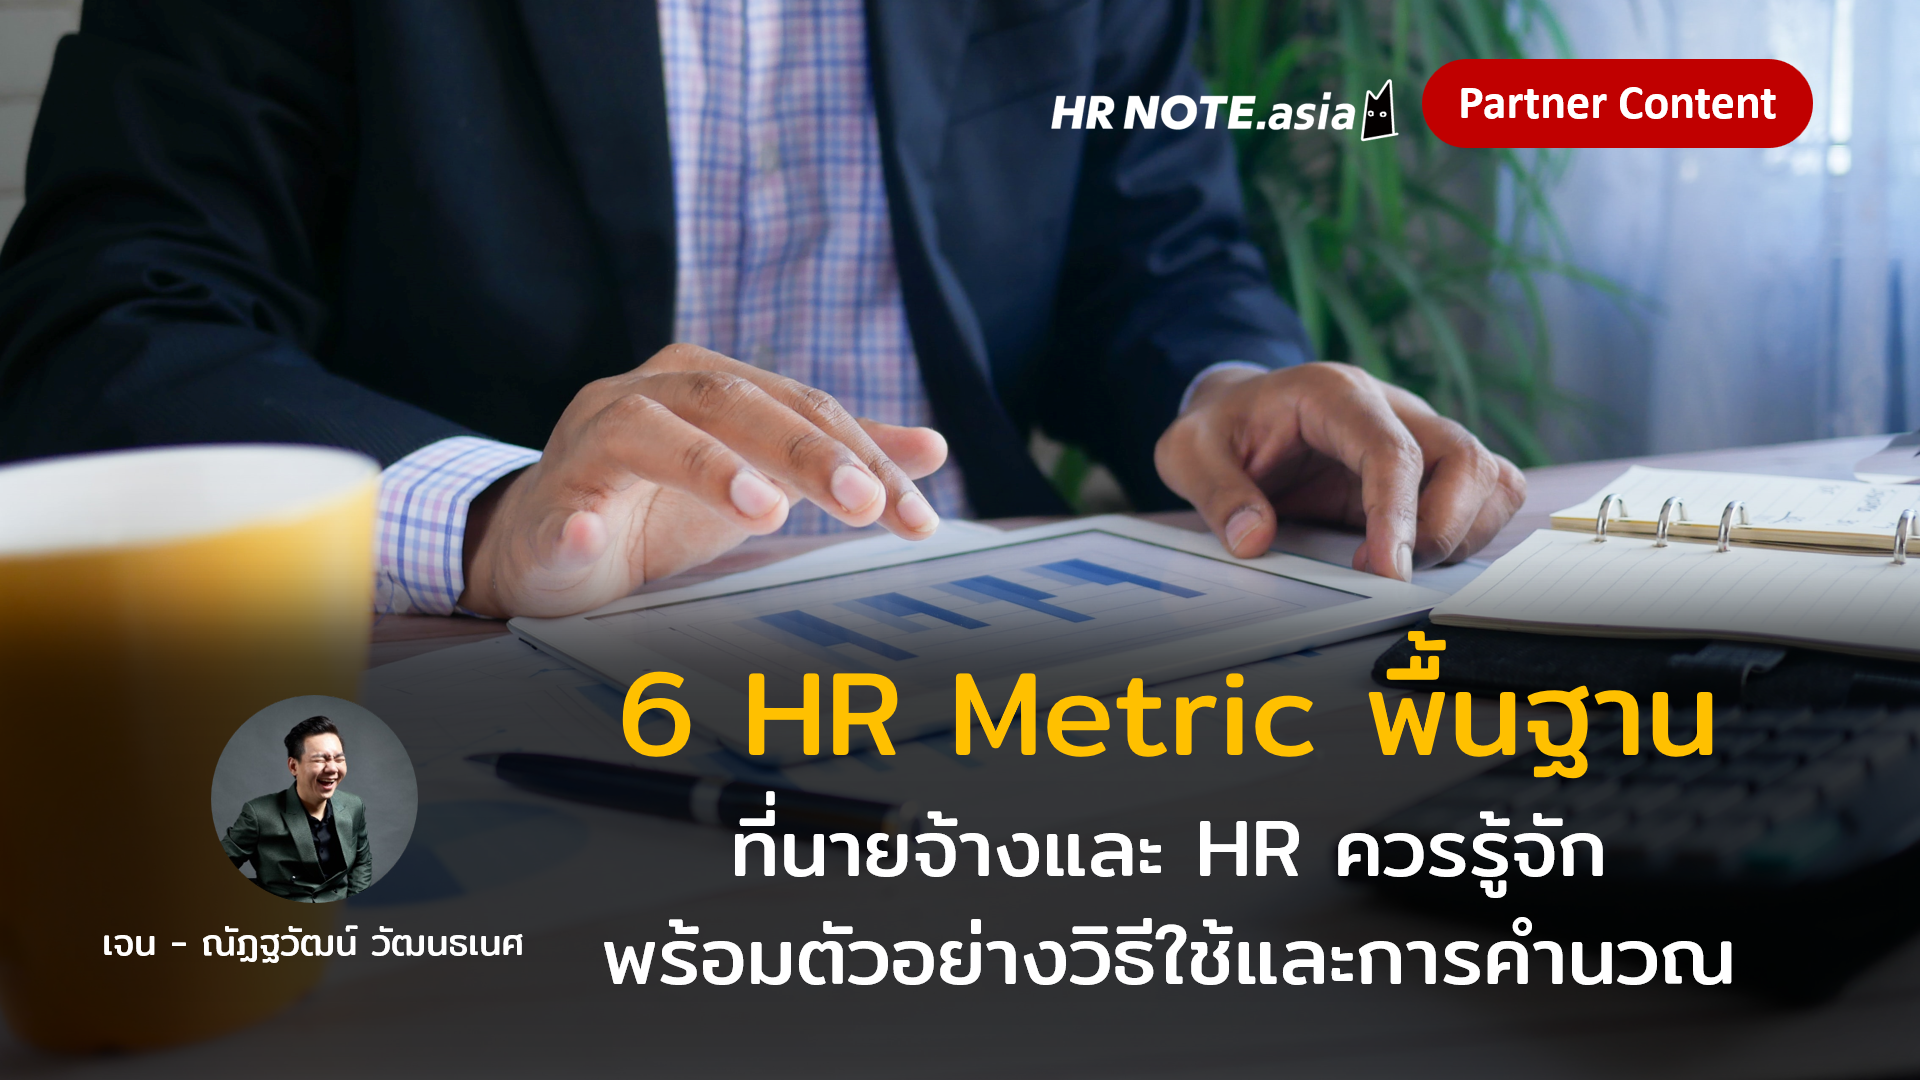 6 HR Metric พื้นฐานที่นายจ้างและ HR ควรรู้จัก พร้อมตัวอย่างวิธีใช้และการคํานวณ